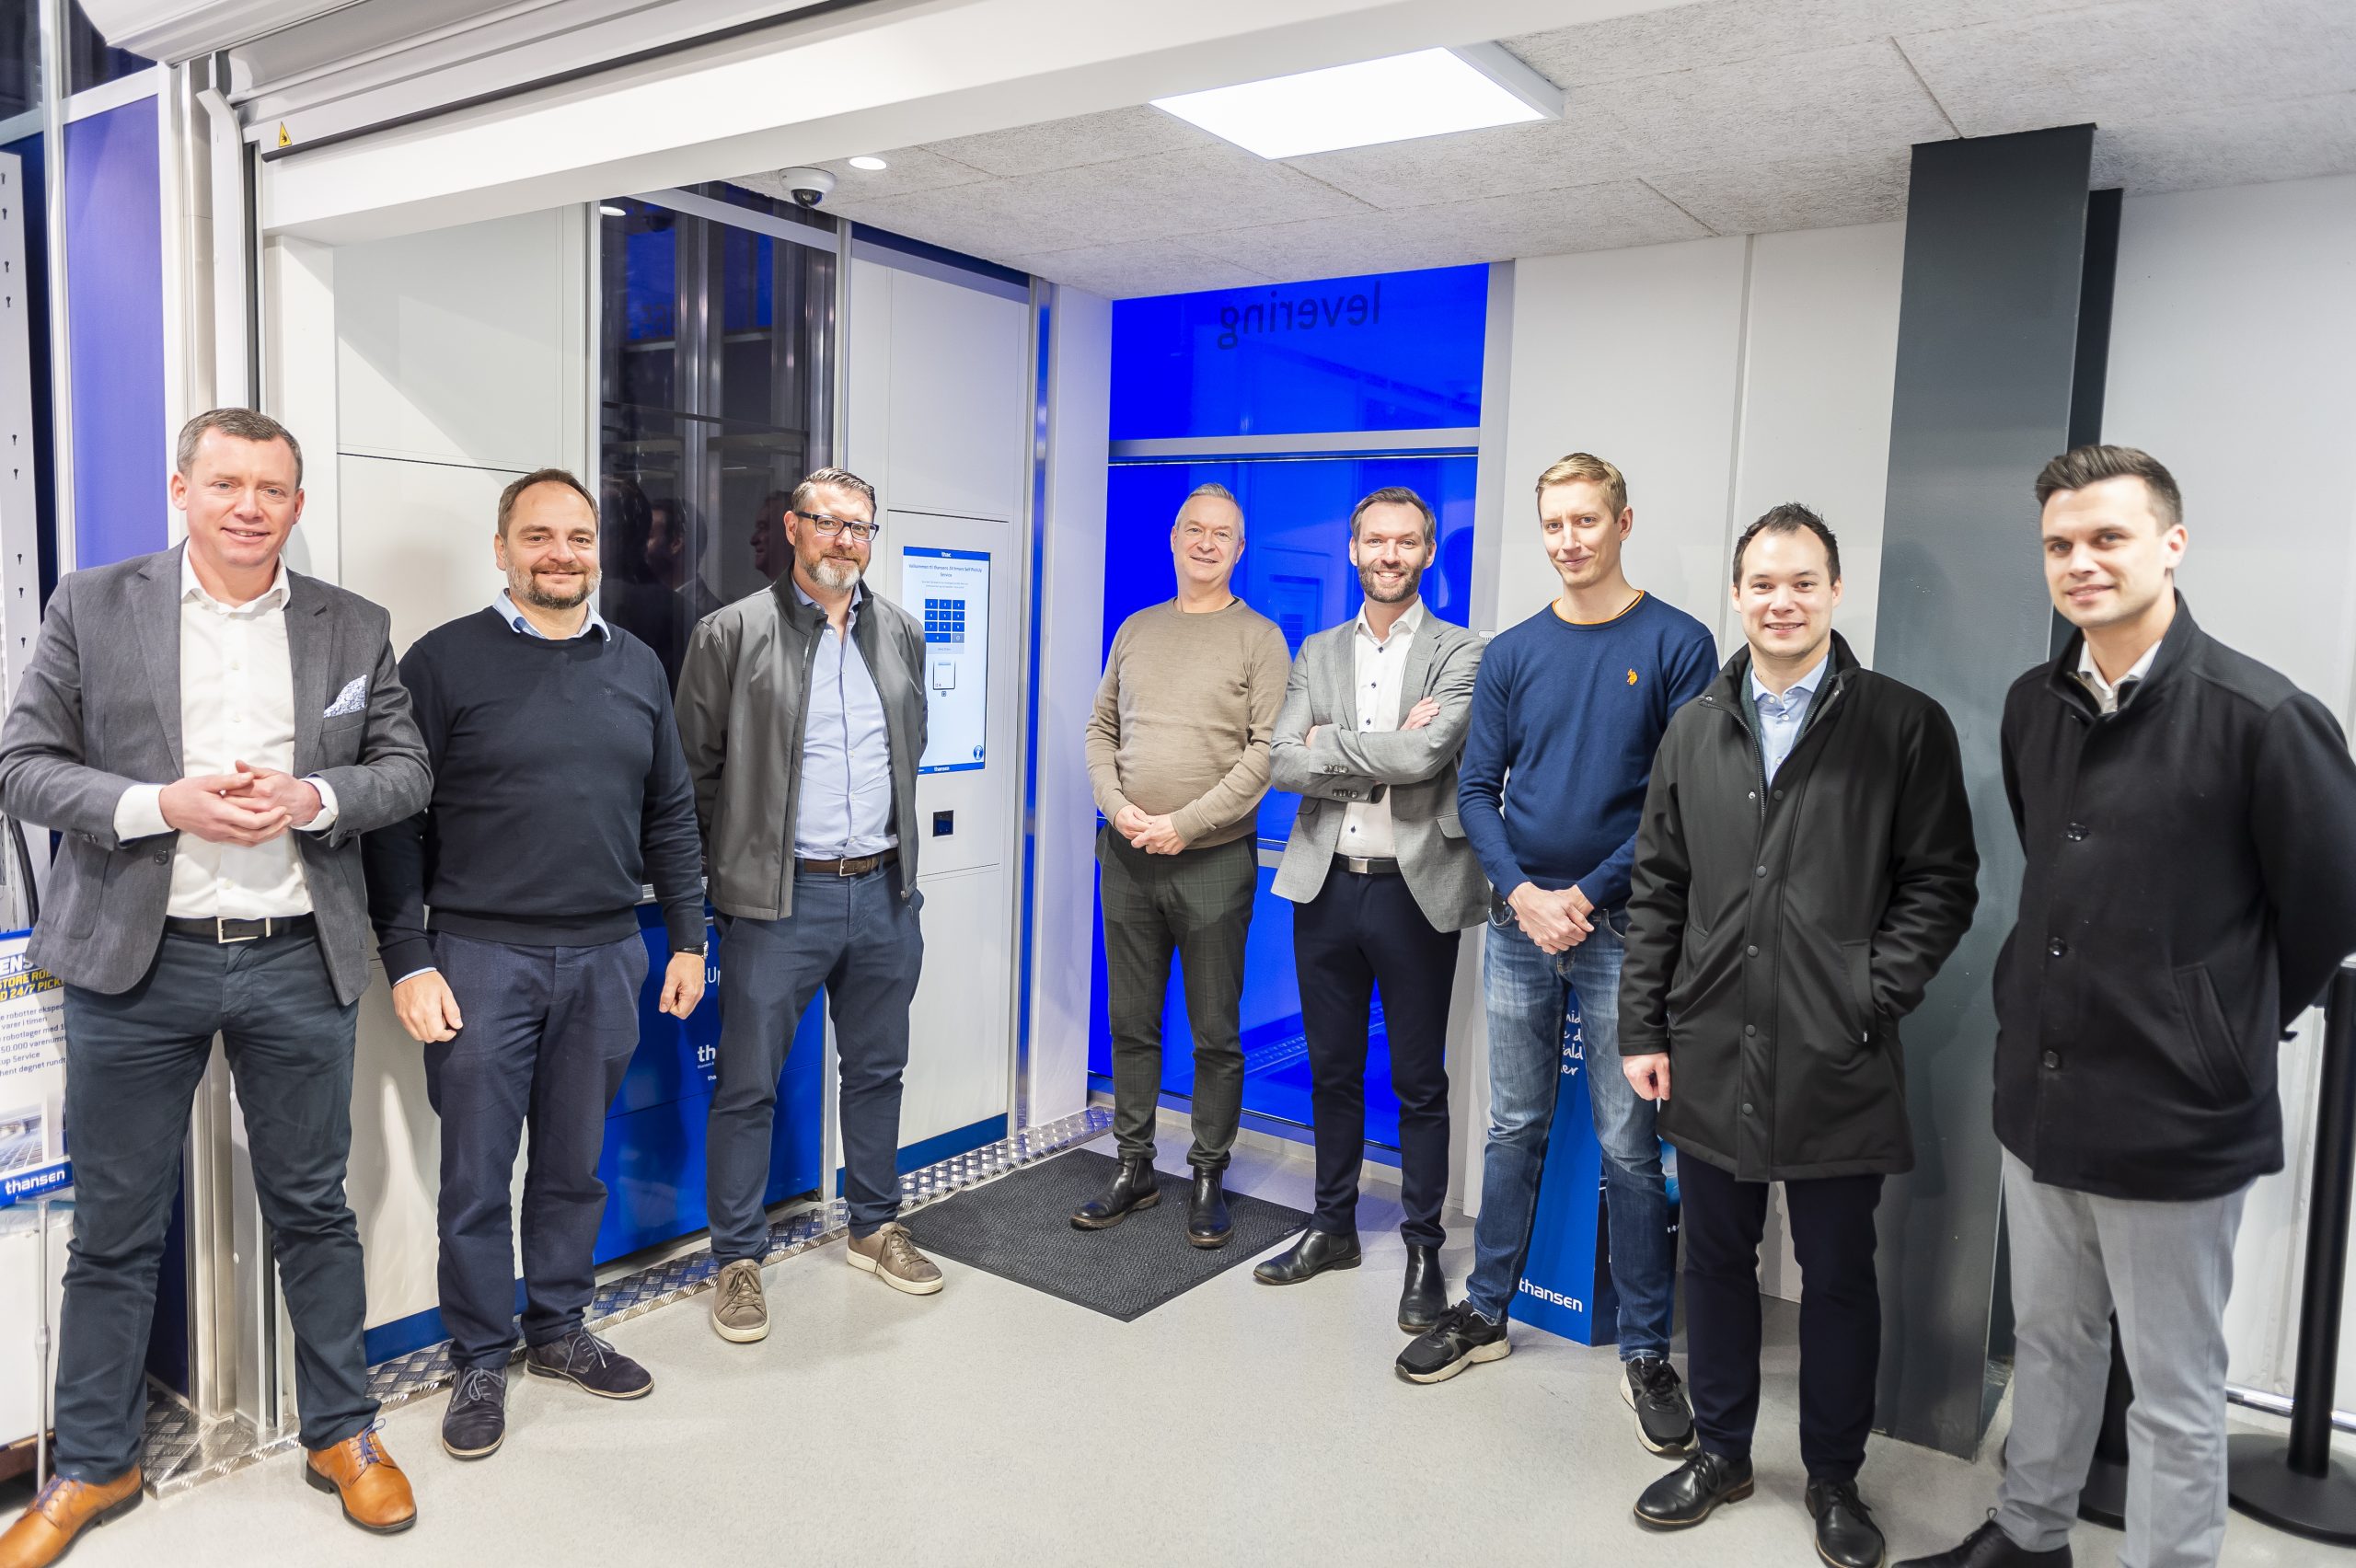 Grupo de profesionales sonriendo frente a la nueva instalación del PickUpPort de AutoStore en una tienda de thansen, demostrando el éxito de la colaboración con Element Logic